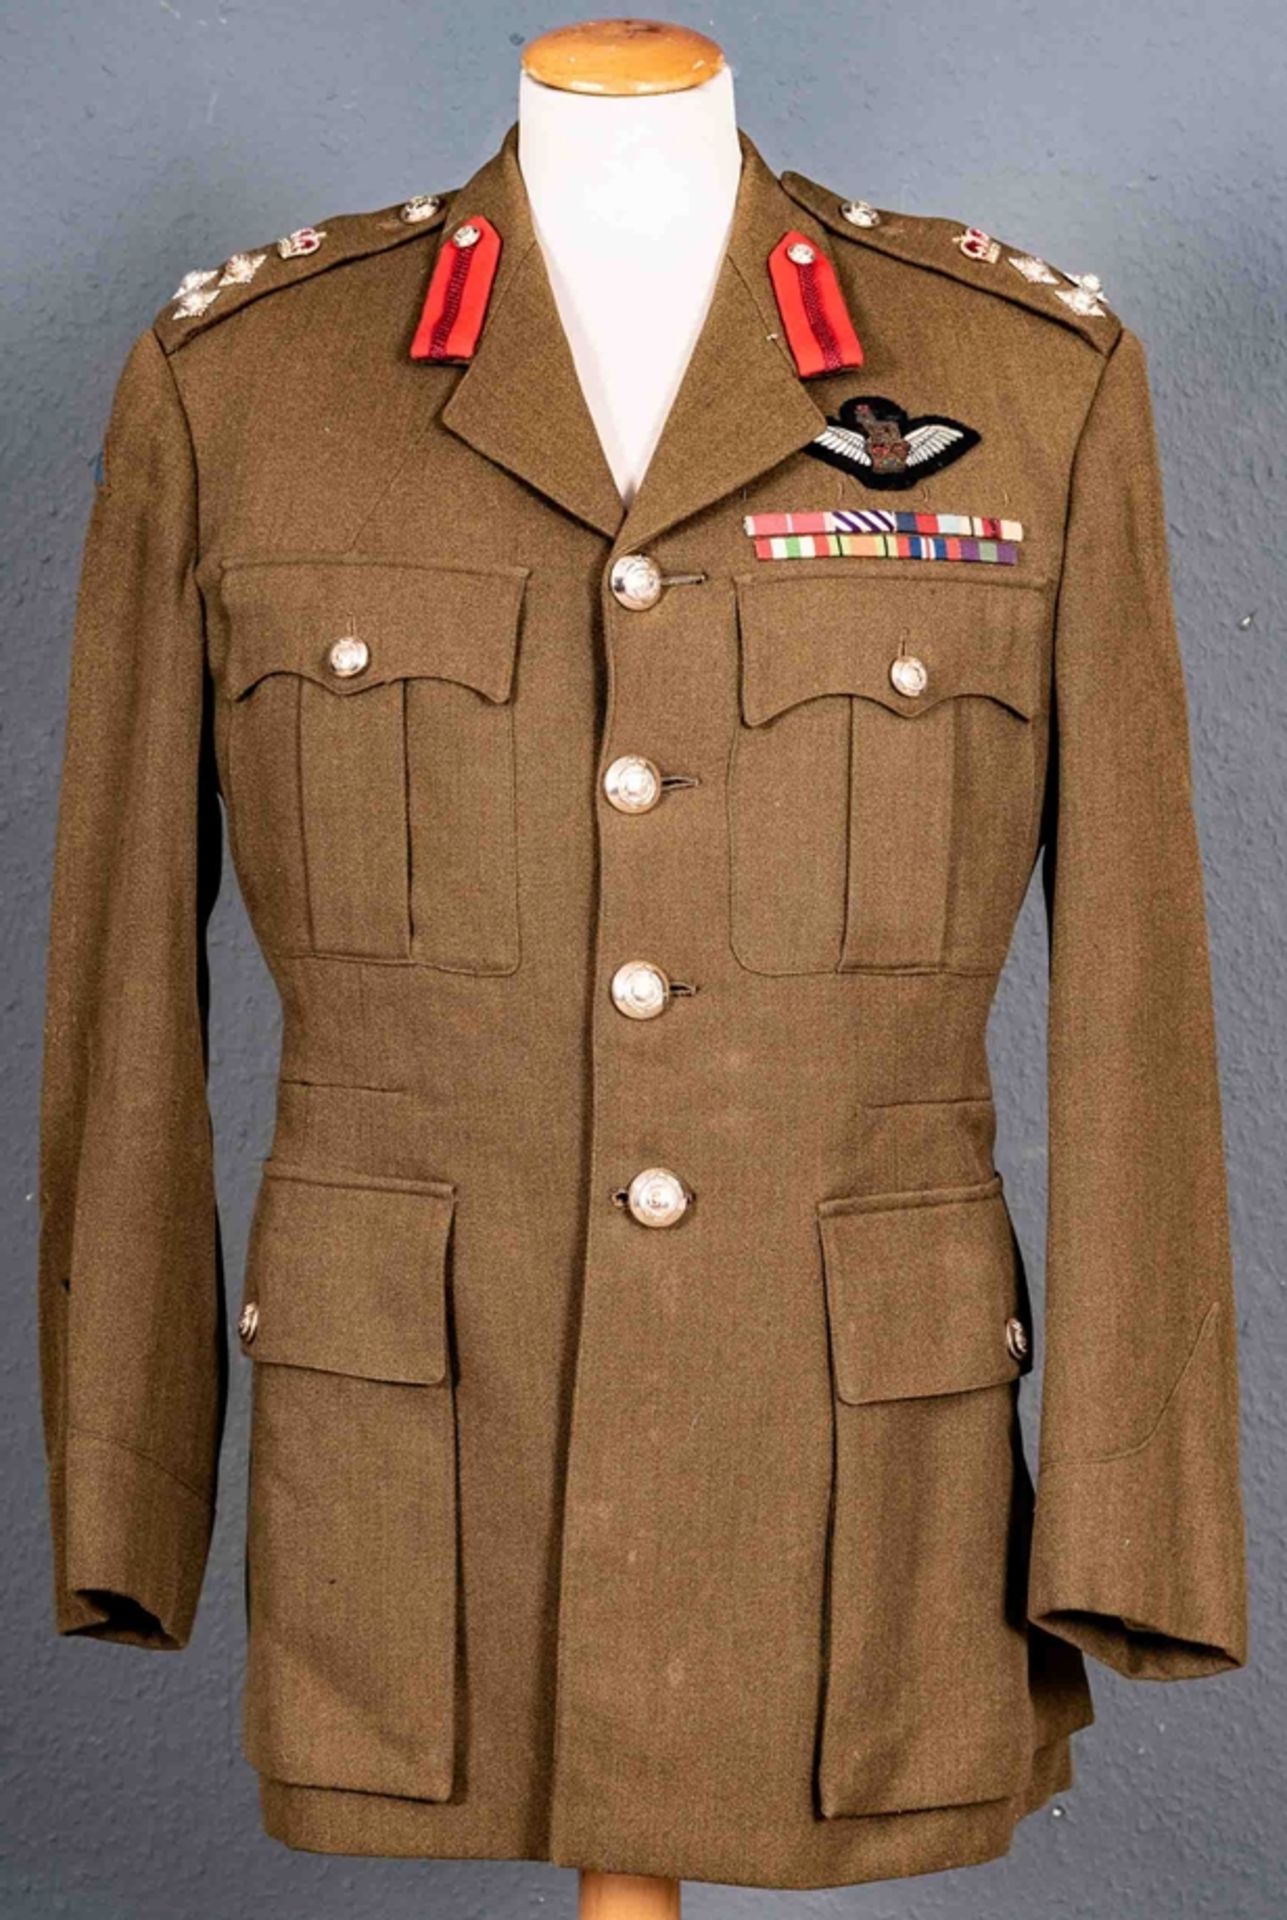 Uniformjacke eines britischen Offiziers, khaki-farbig mit diversen Schulterstückabzeichen, Kragensp